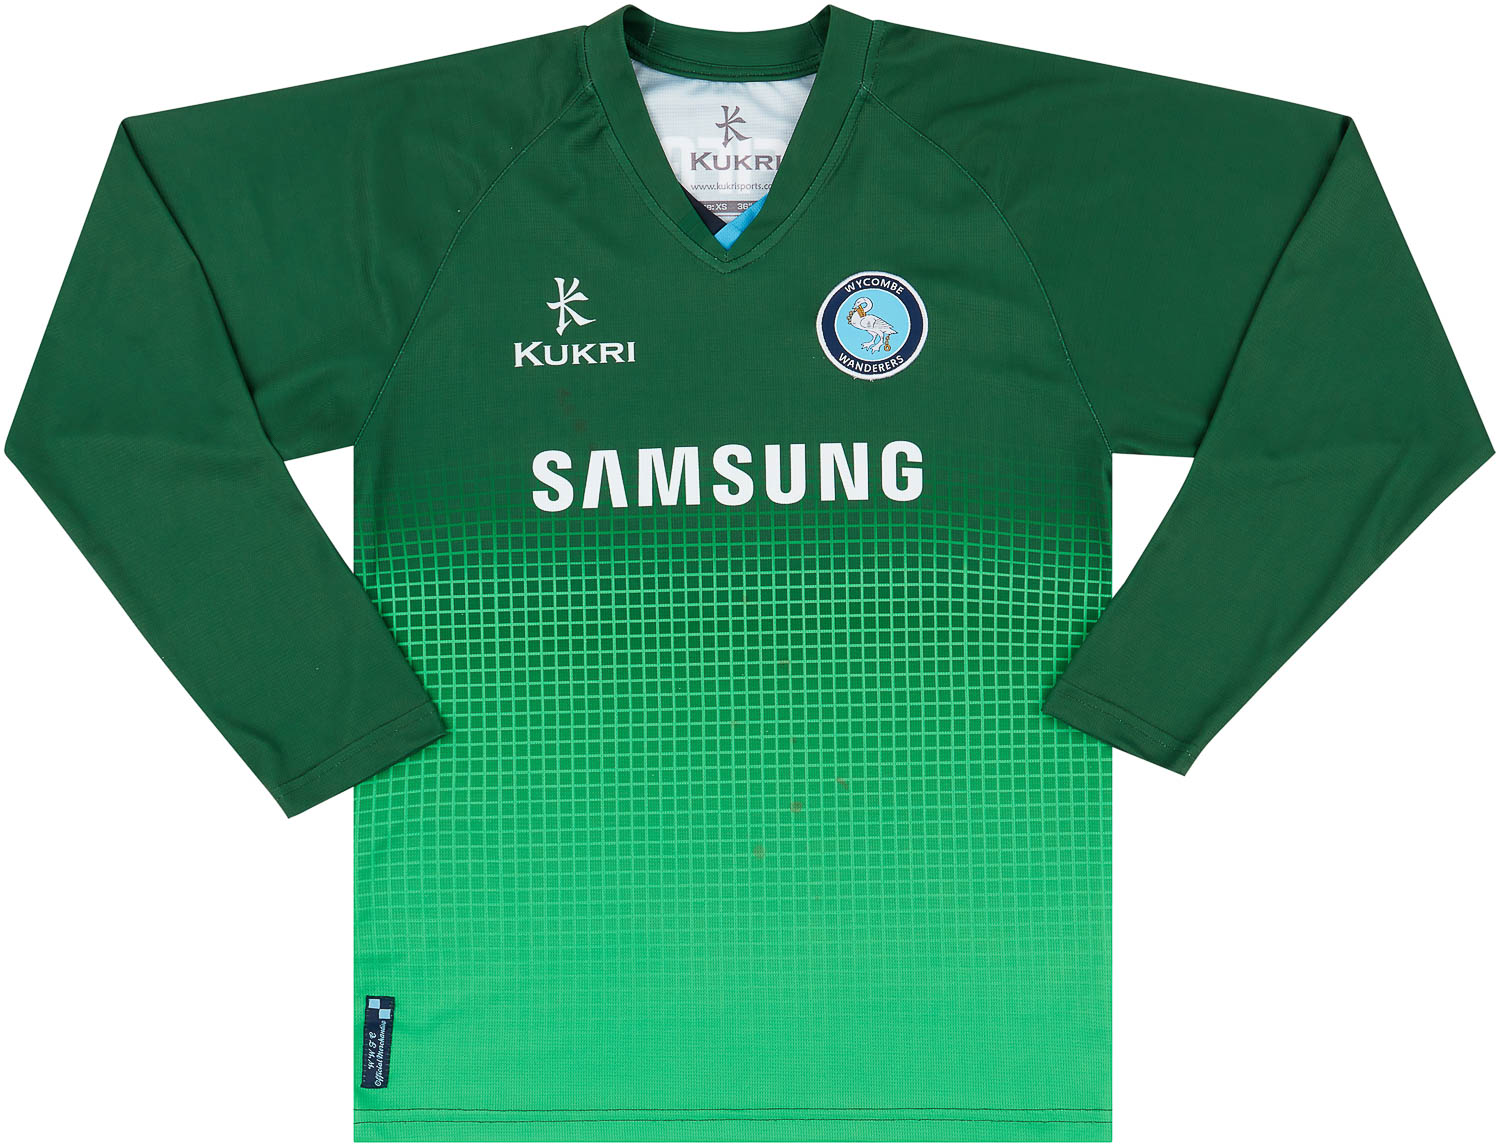 Wycombe Wanderers  Goleiro camisa (Original)